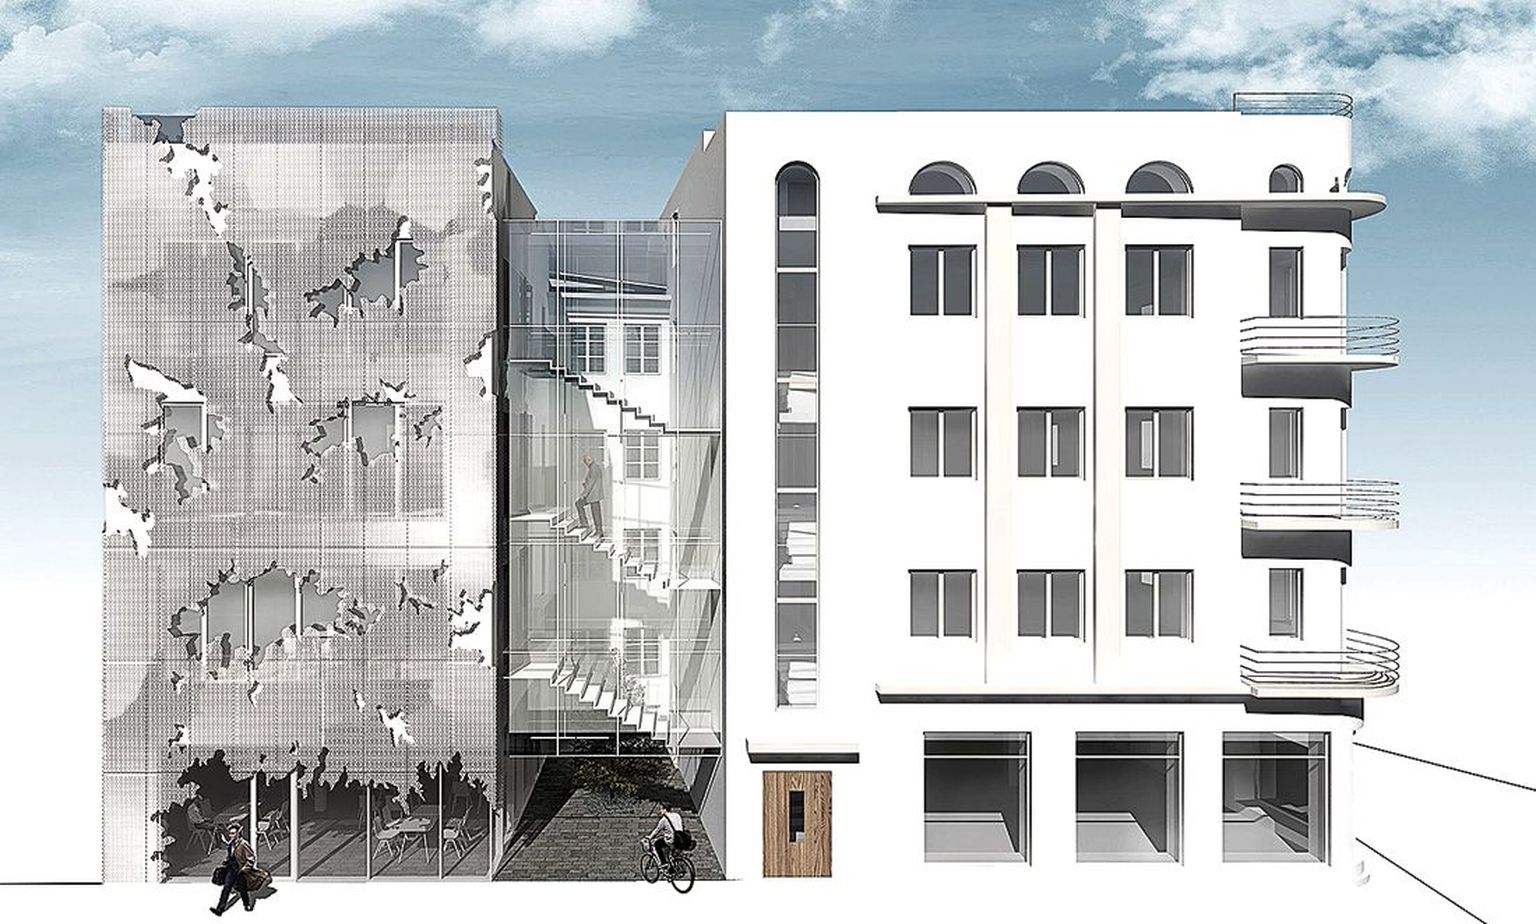 Gildi tänavale planeeritava hoone fassaad on osaliselt klaasist ja osalt kaetud perforeeritud plekiga.